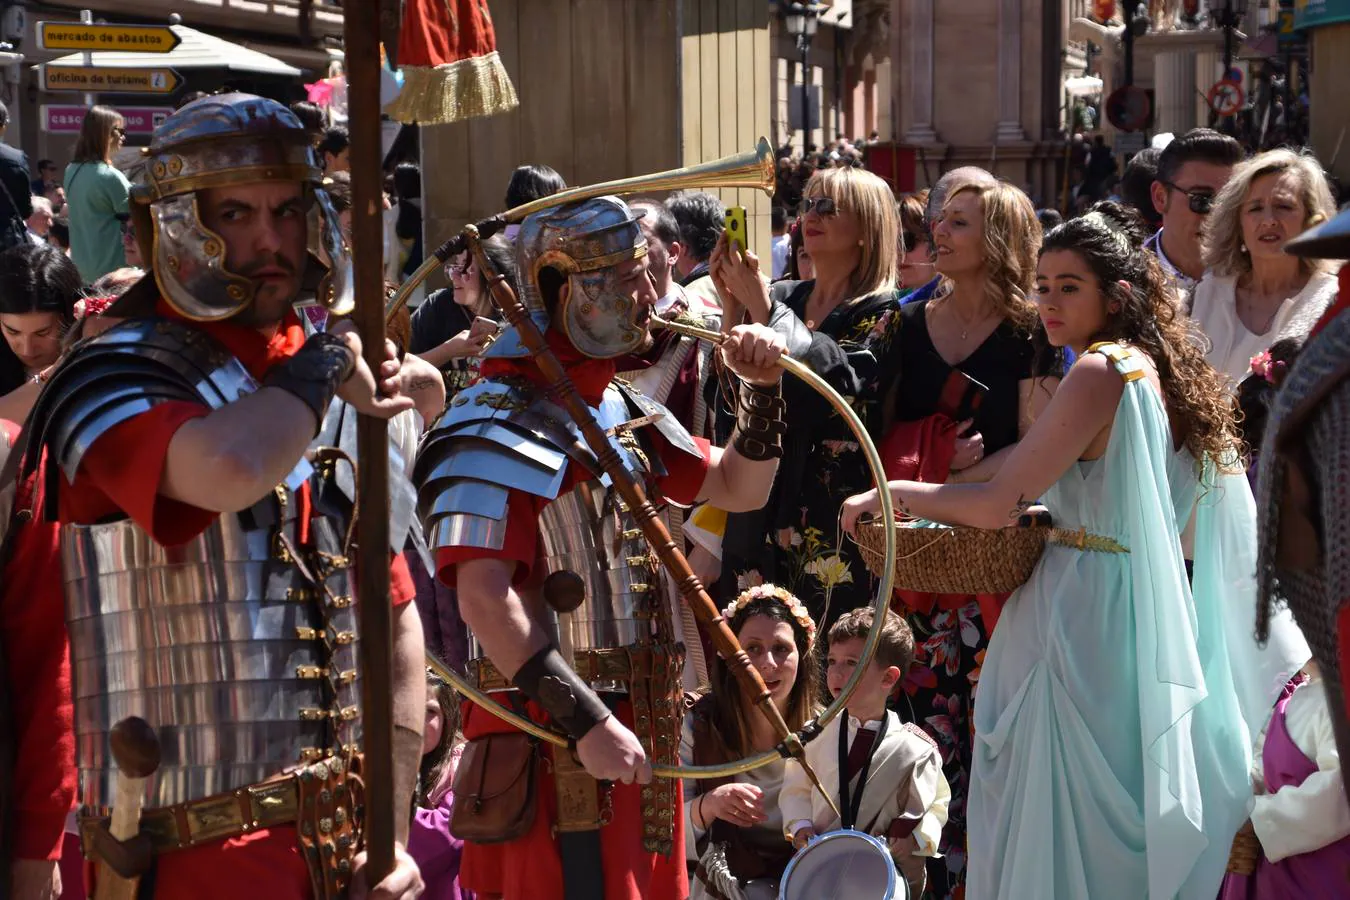 La ciudad recuerda su historia romana con la celebración de Mercafórum, un evento que se inauguró este sábado y que reserva numerosas actividades para este domingo